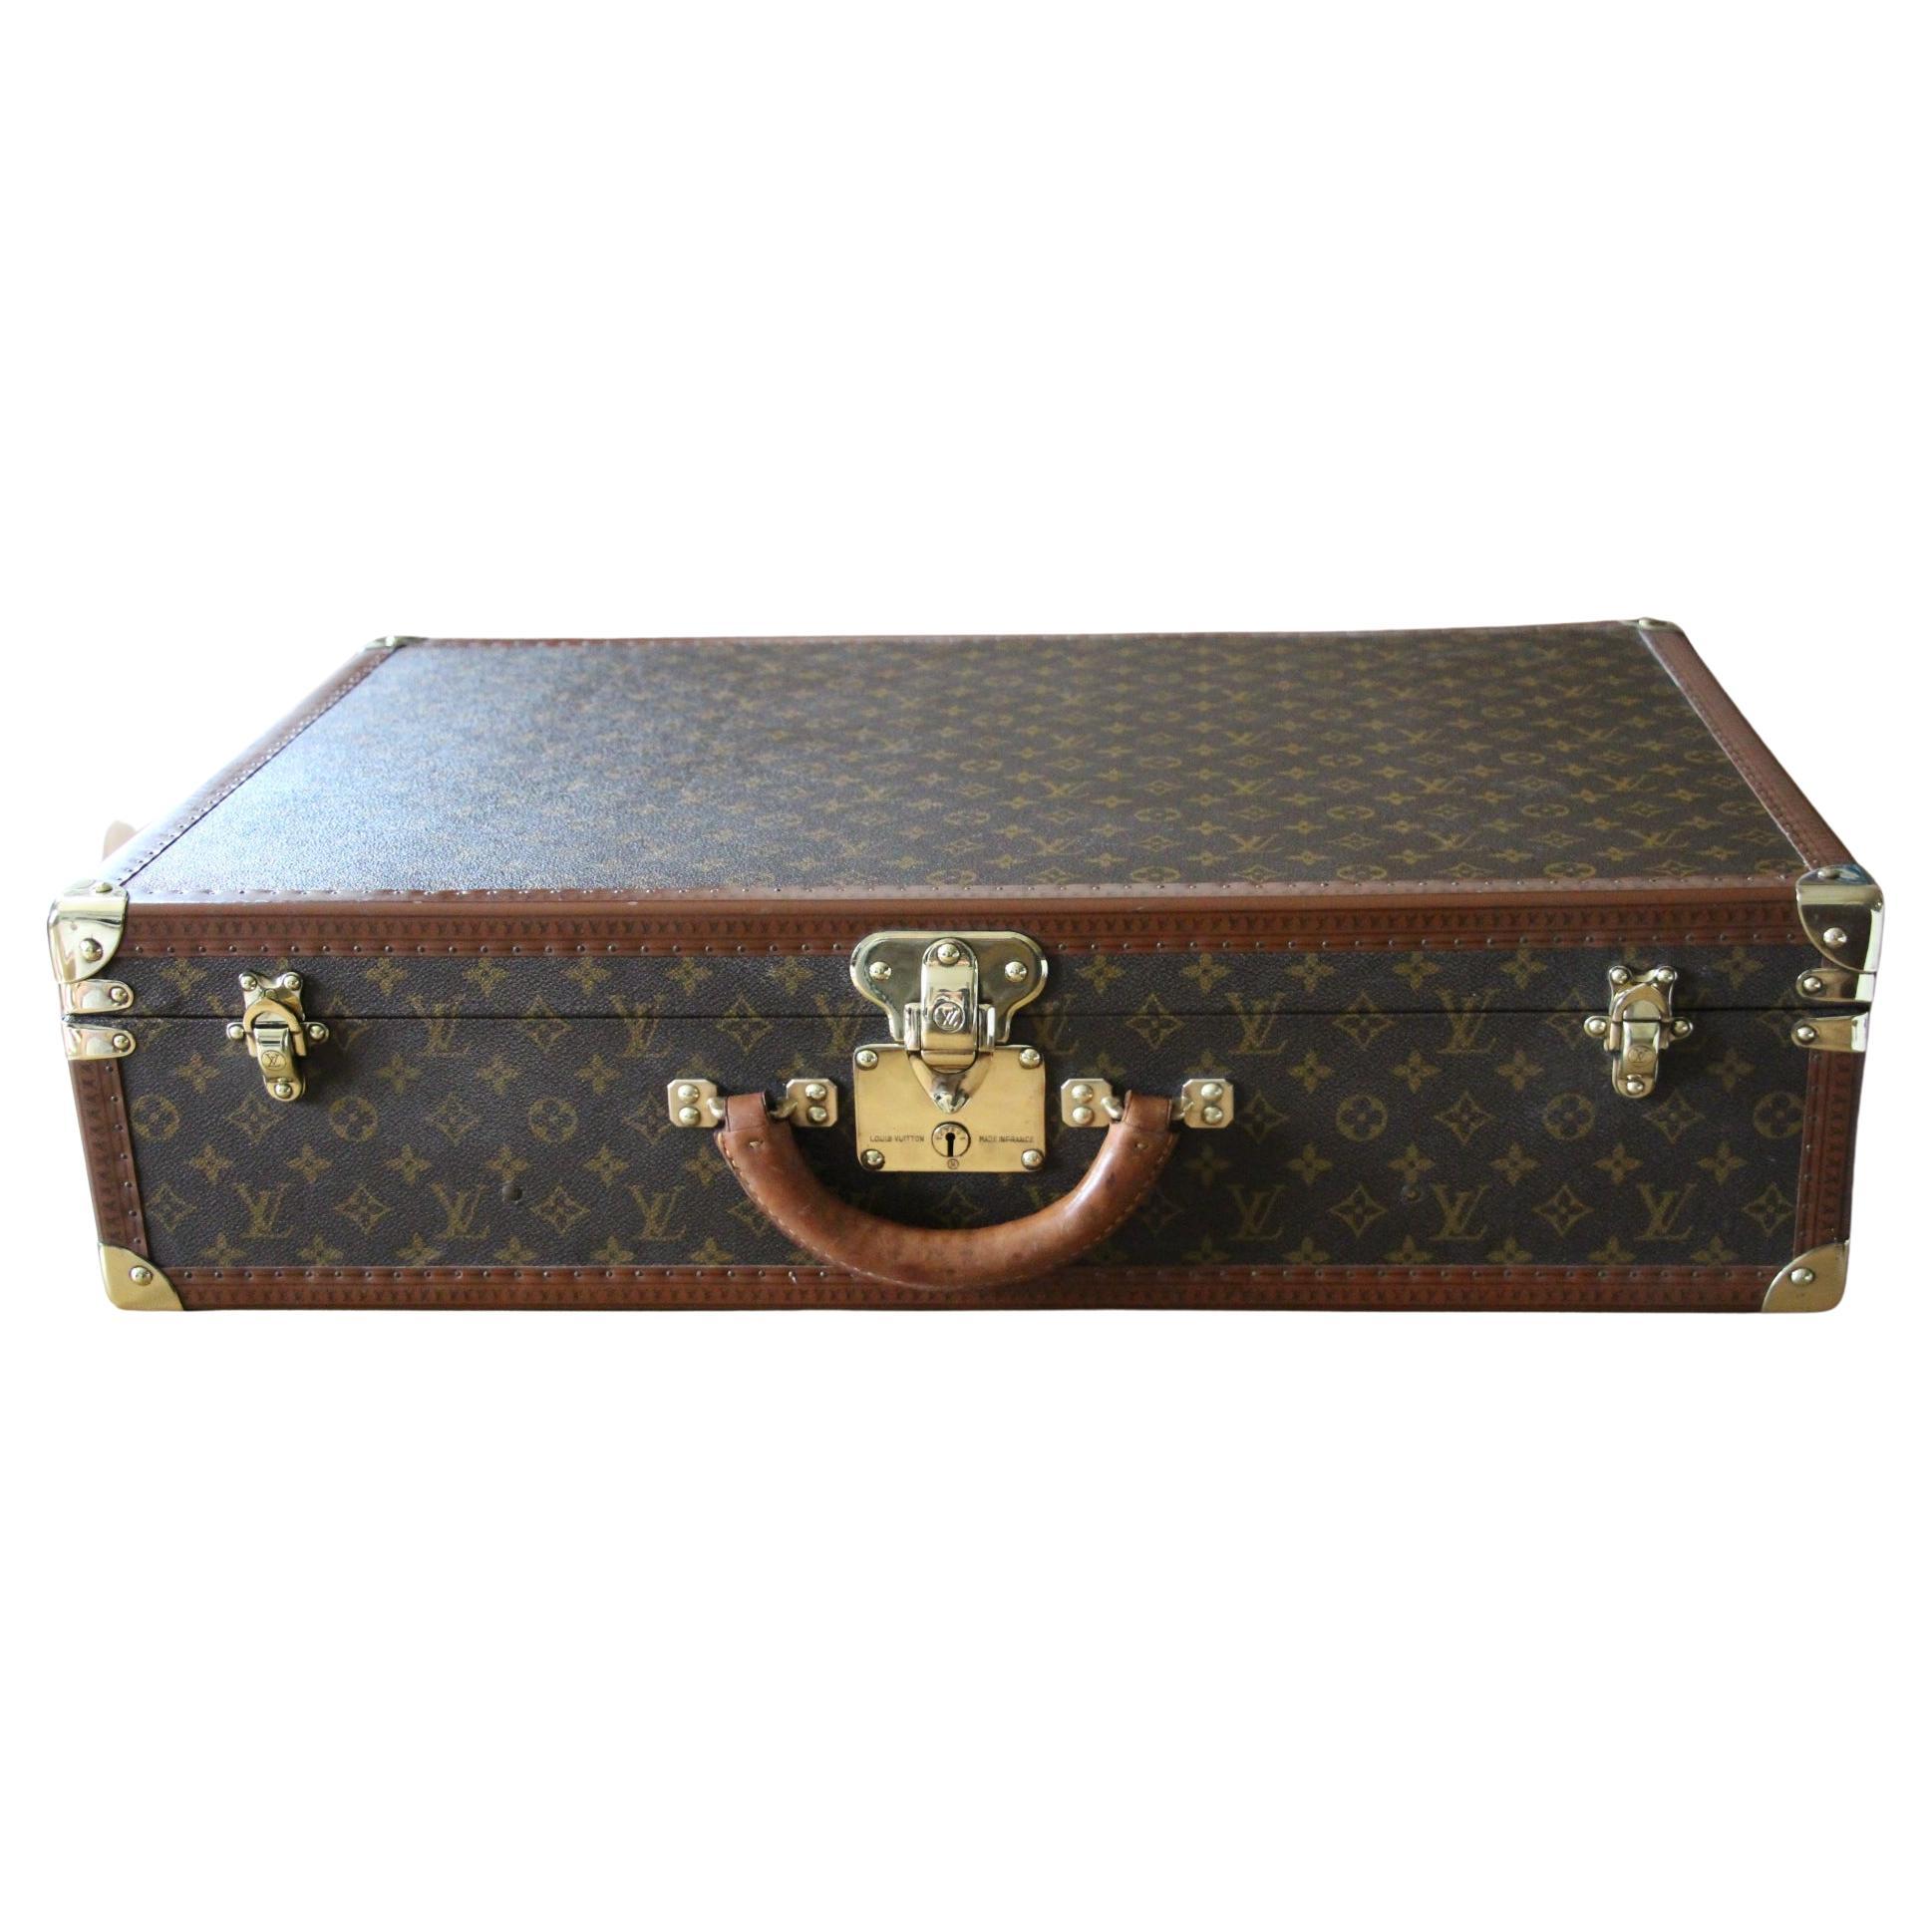  Louis Vuitton Suitcase 70 cm,  Louis Vuitton Trunk For Sale